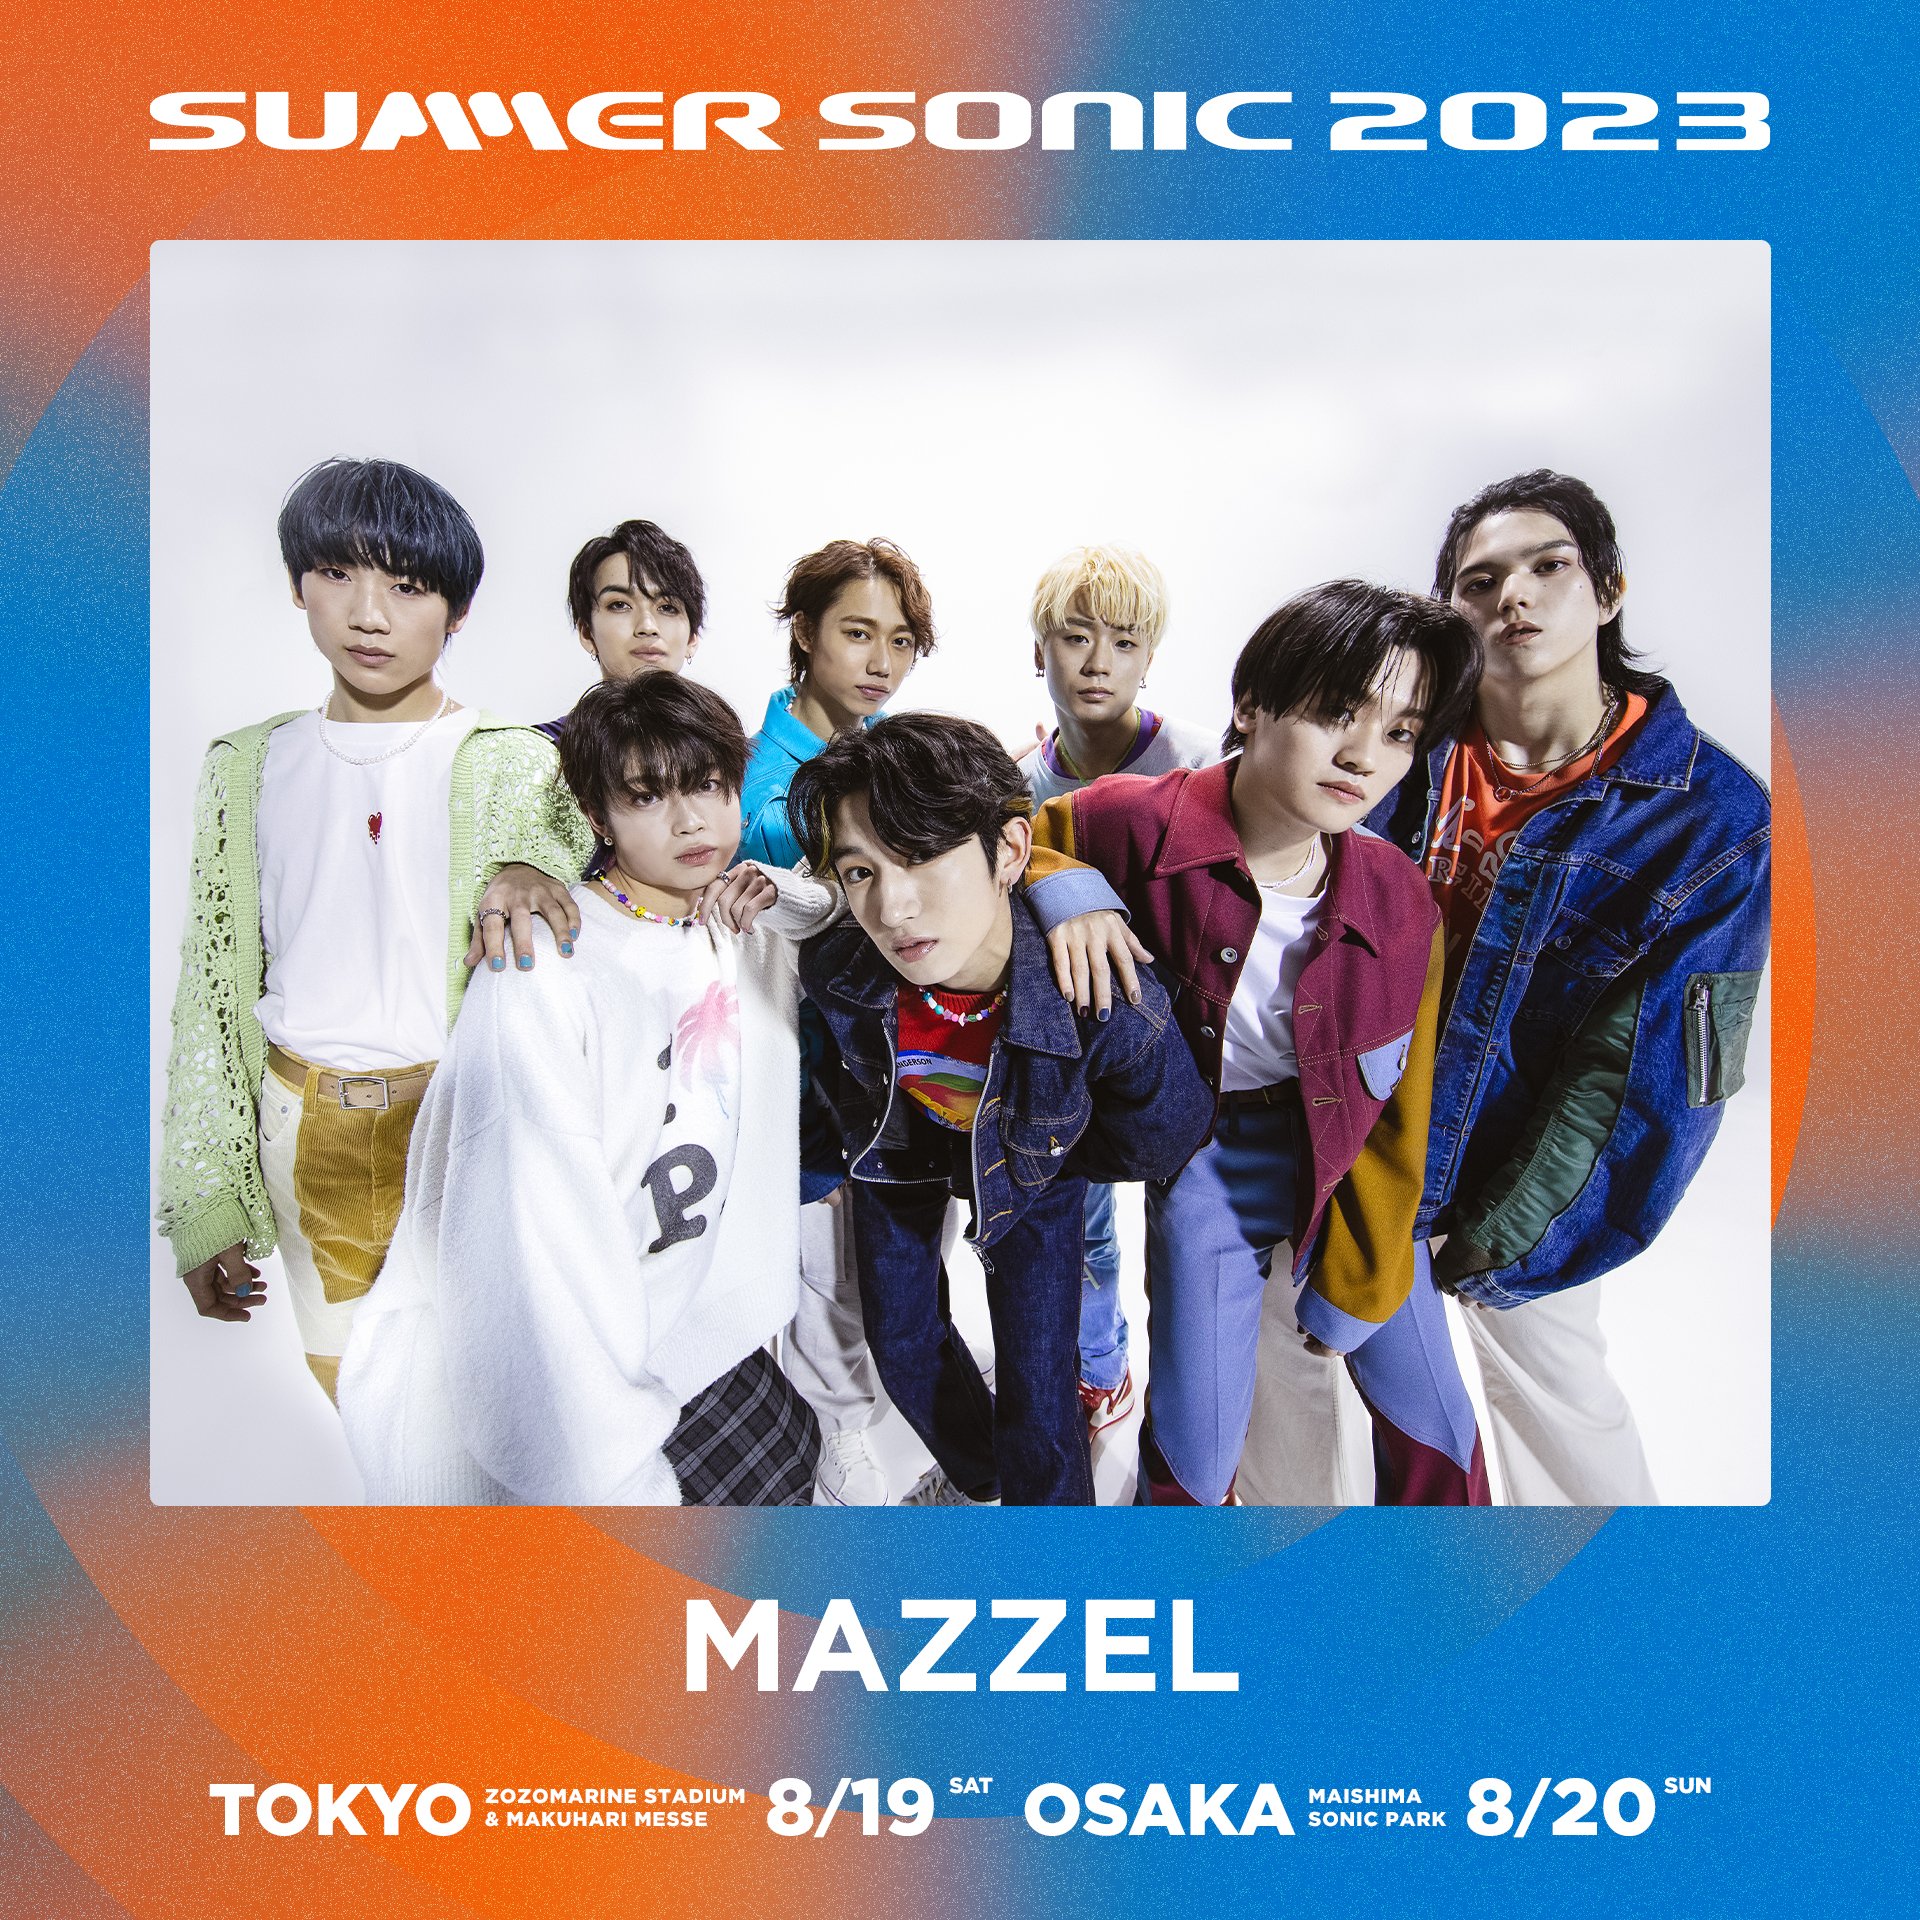 「SUMMER SONIC 2023」への出演が決定したMAZZEL(MAZZELの公式ツイッターから) 